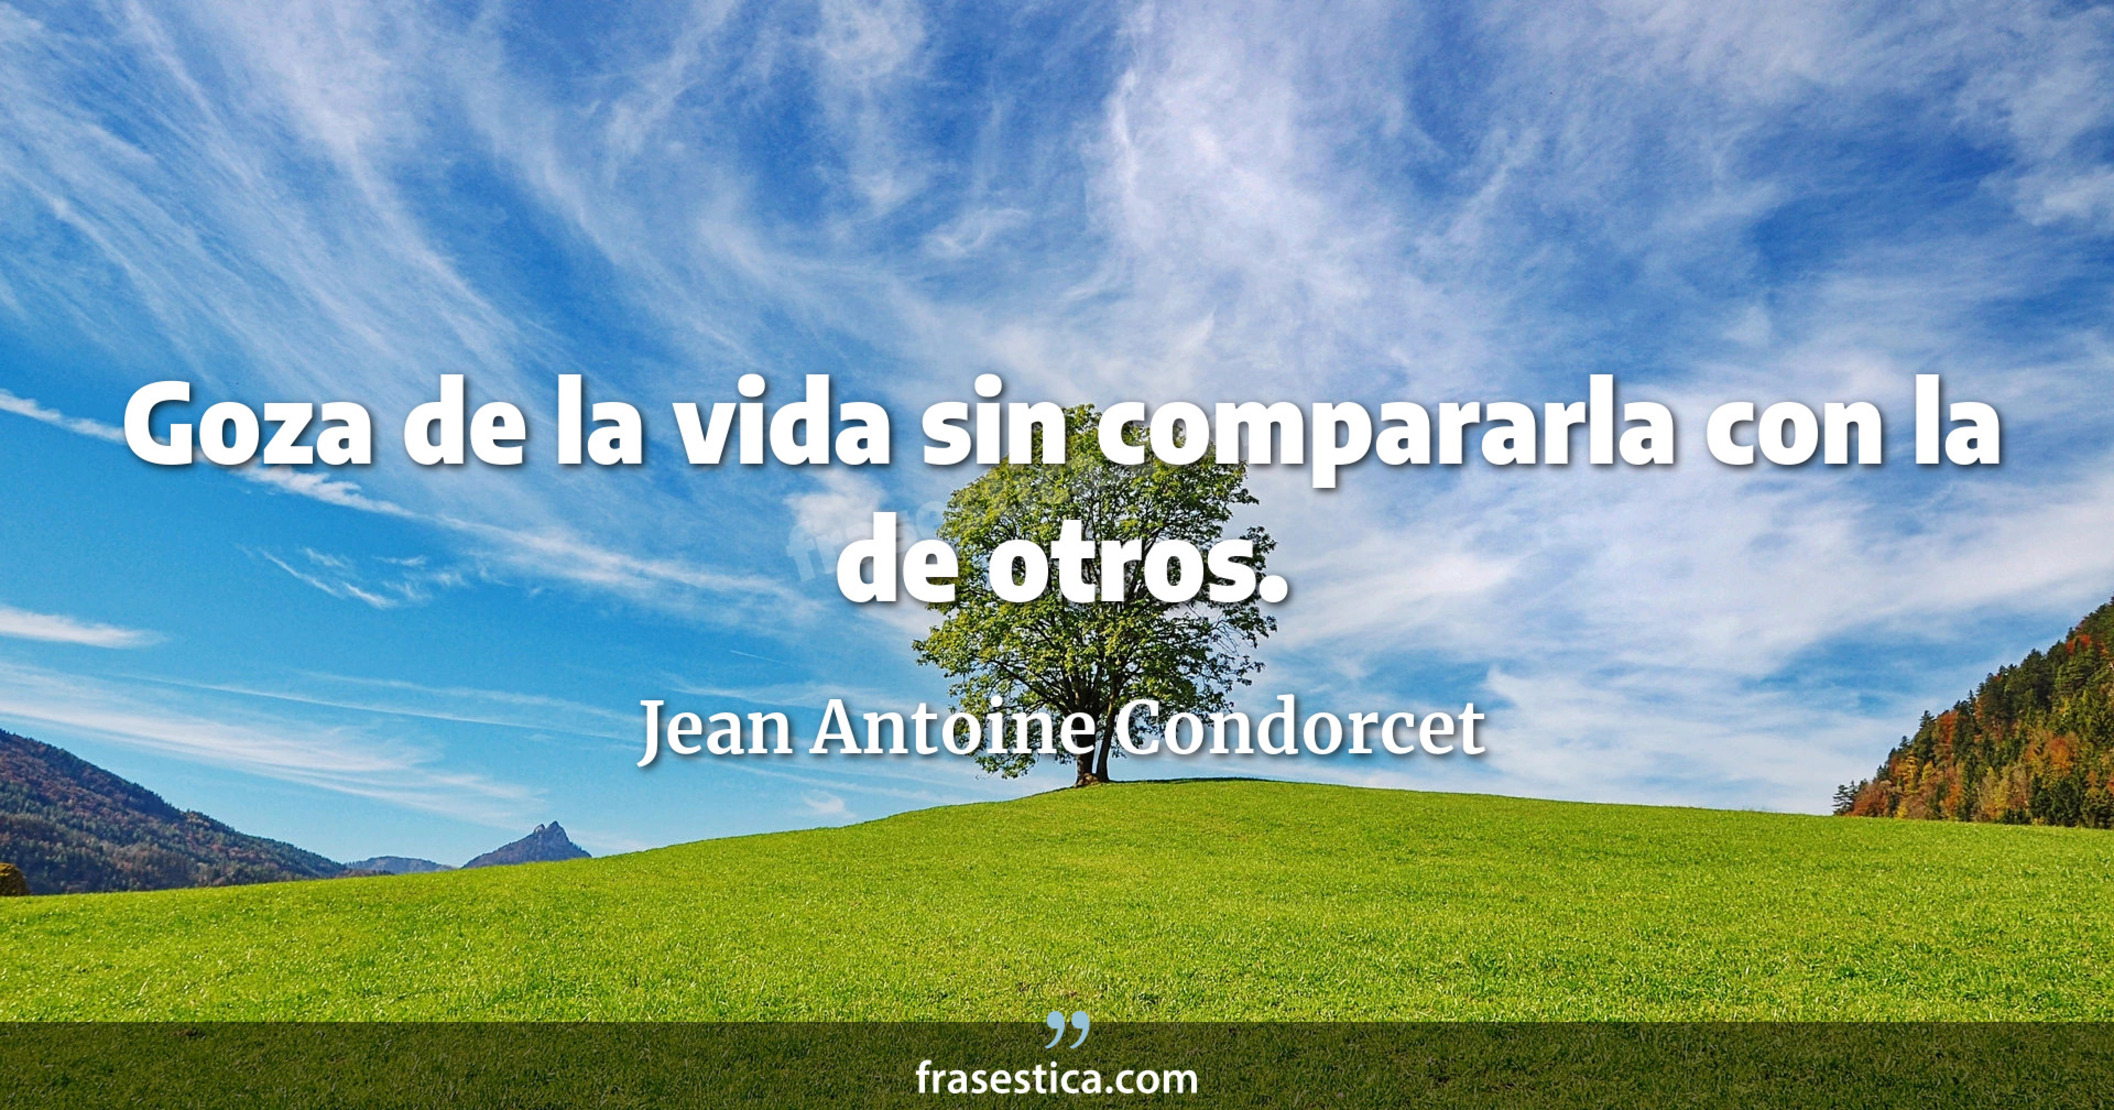 Goza de la vida sin compararla con la de otros. - Jean Antoine Condorcet